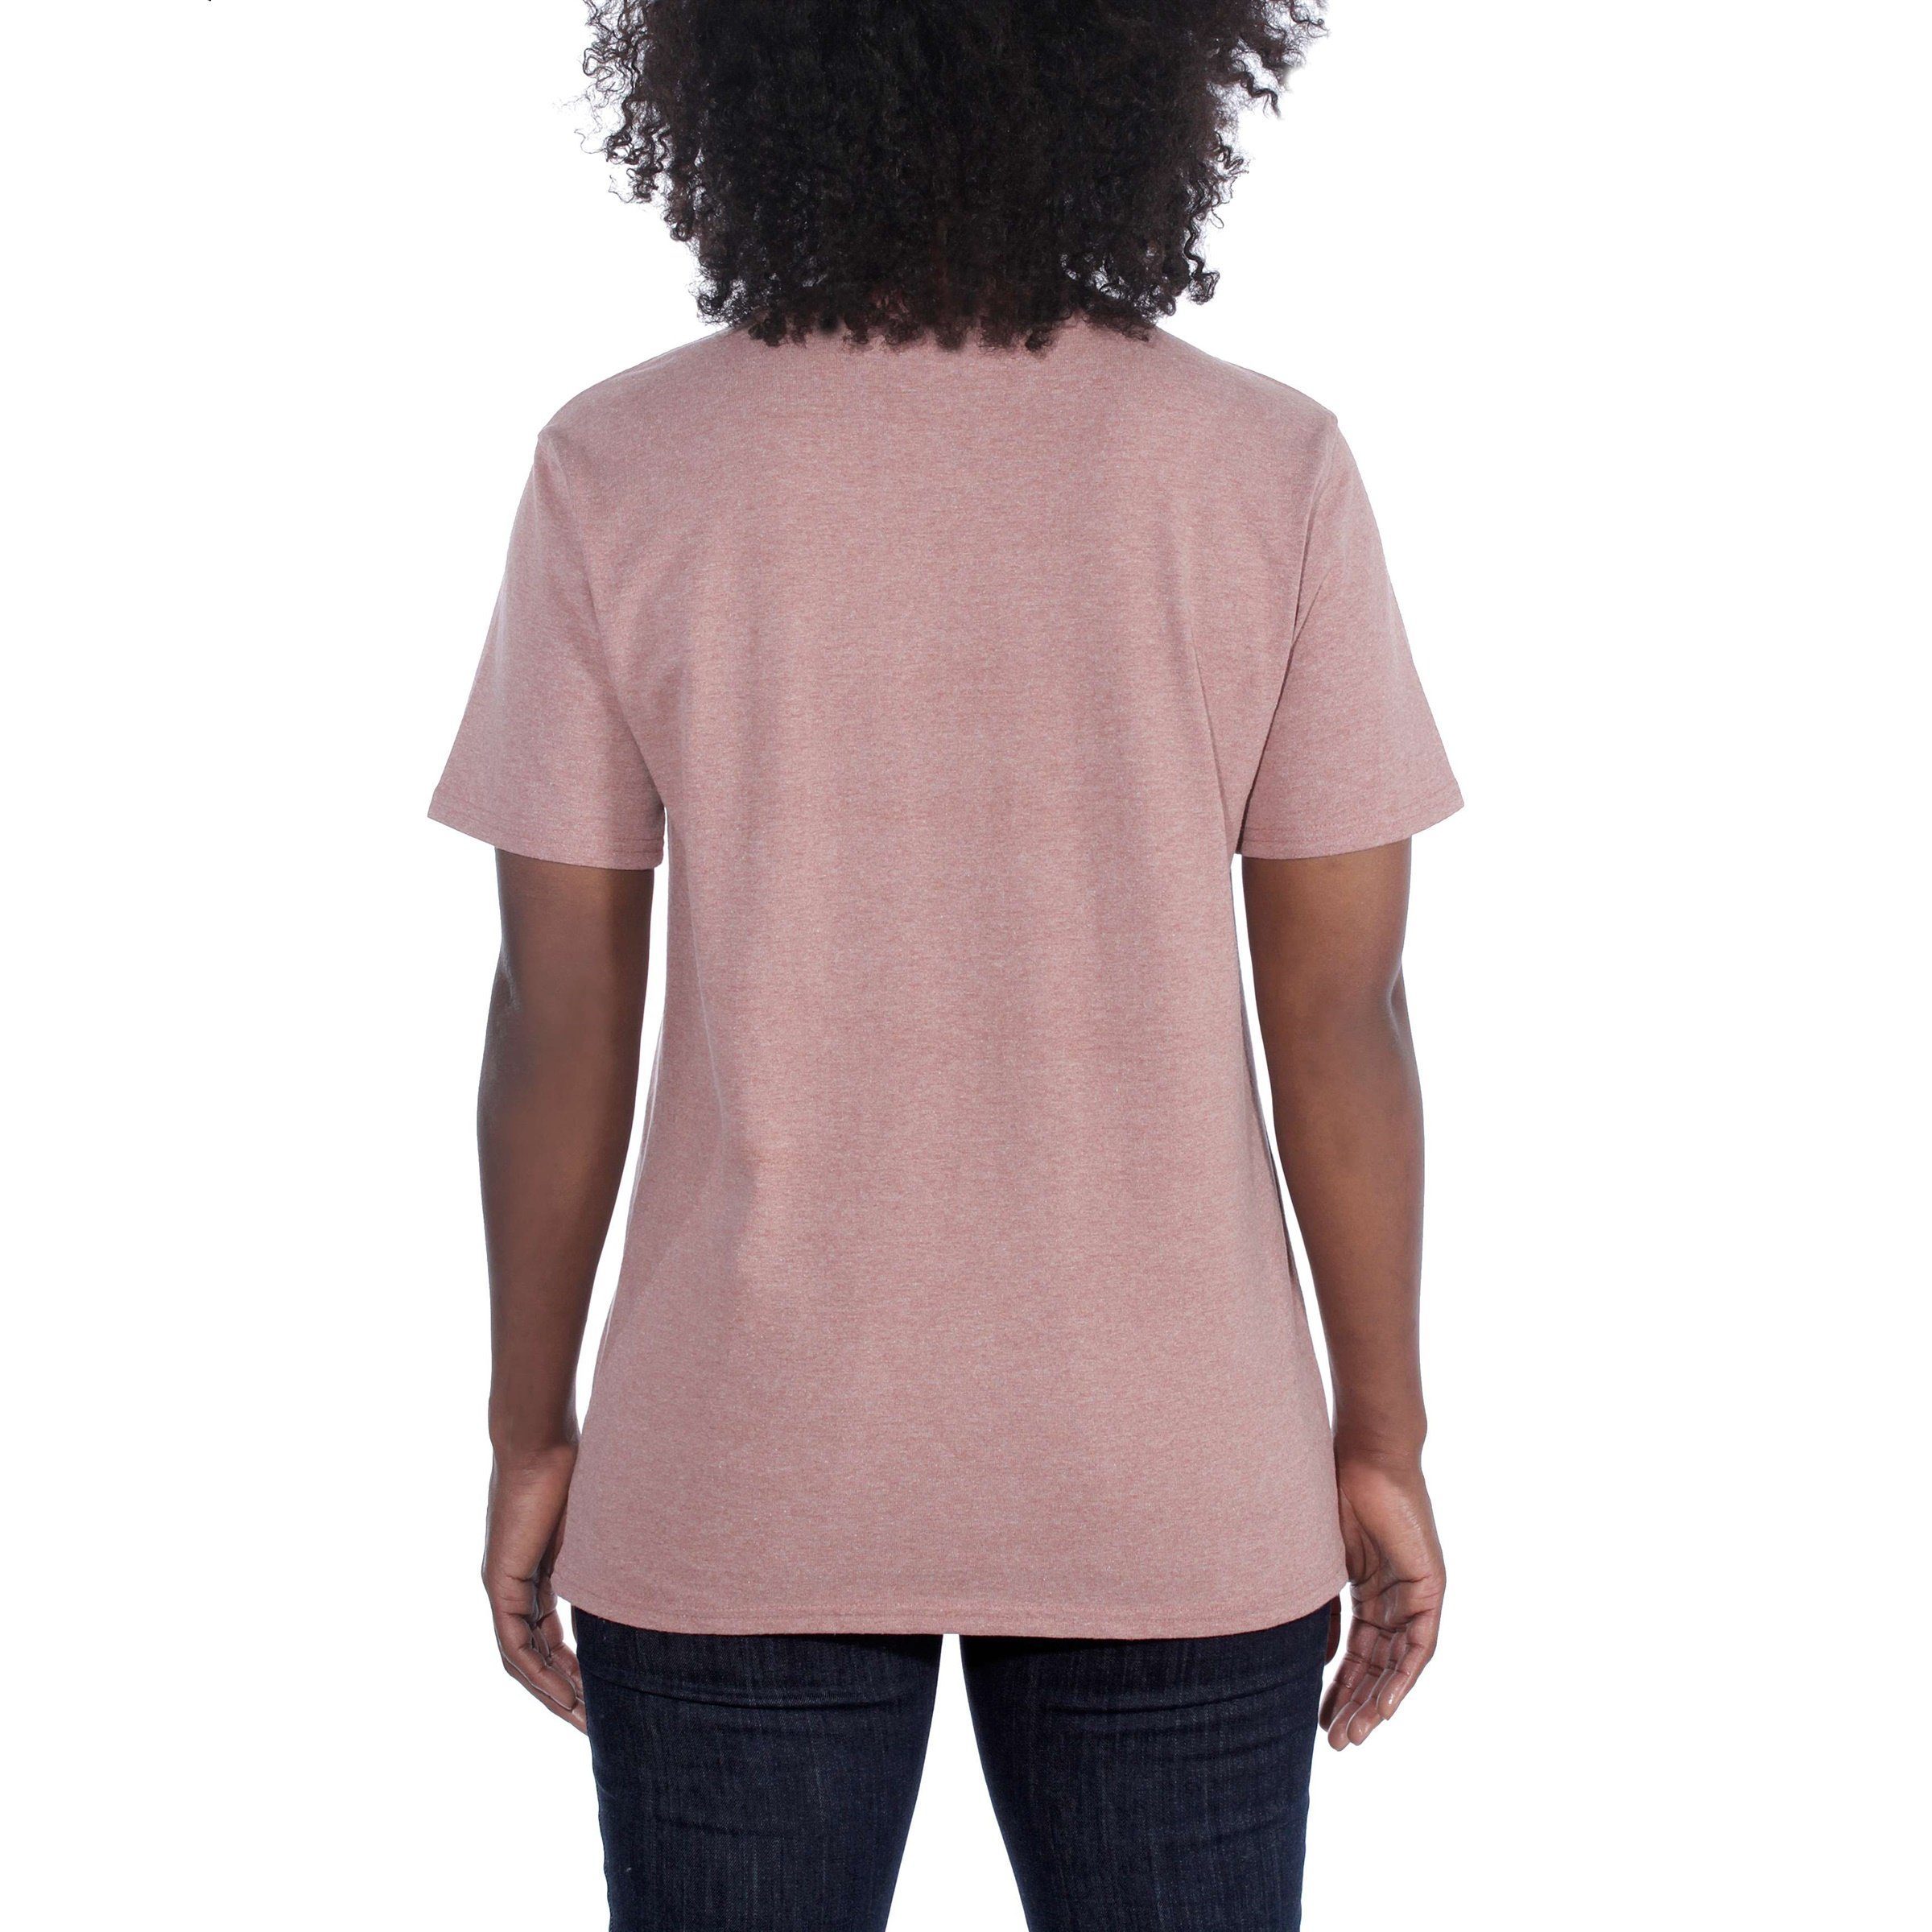 Carhartt Heavyweight T-Shirt heather lavender Damen soft Fit Pocket Adult Short-Sleeve Loose T-Shirt Carhartt